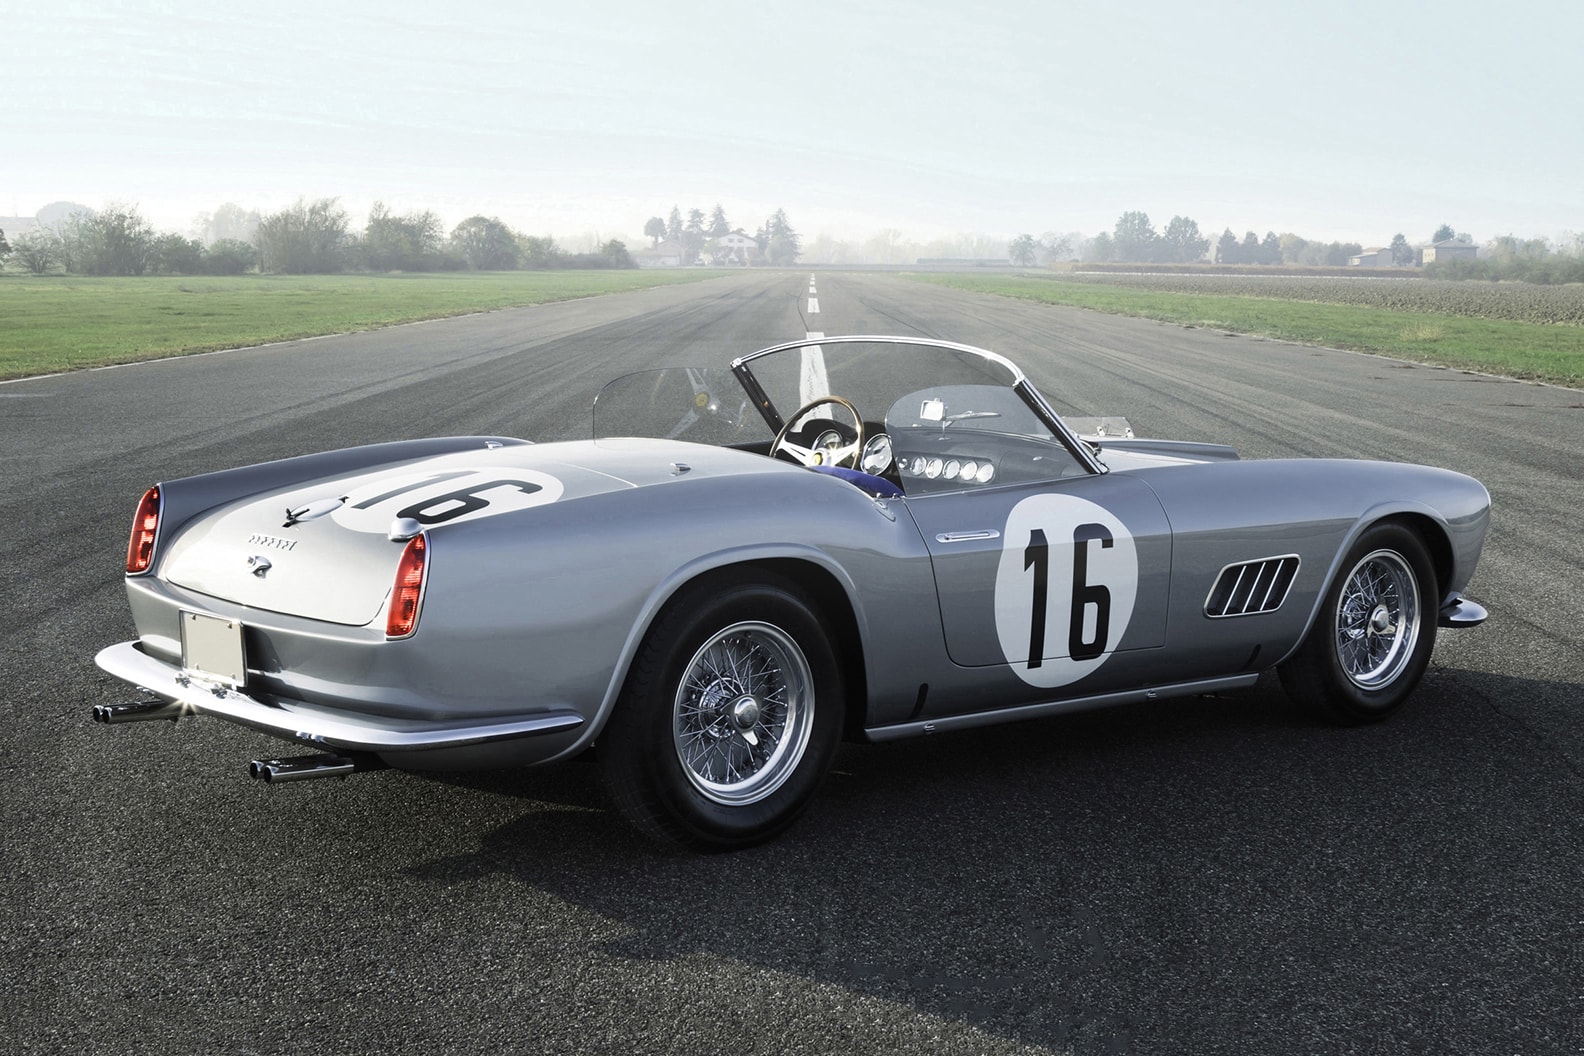 1959 Ferrari 250 GT California Sale 18 Million USD Dollars RM Sothebys Auction Aluminum Steve Jobs BMW